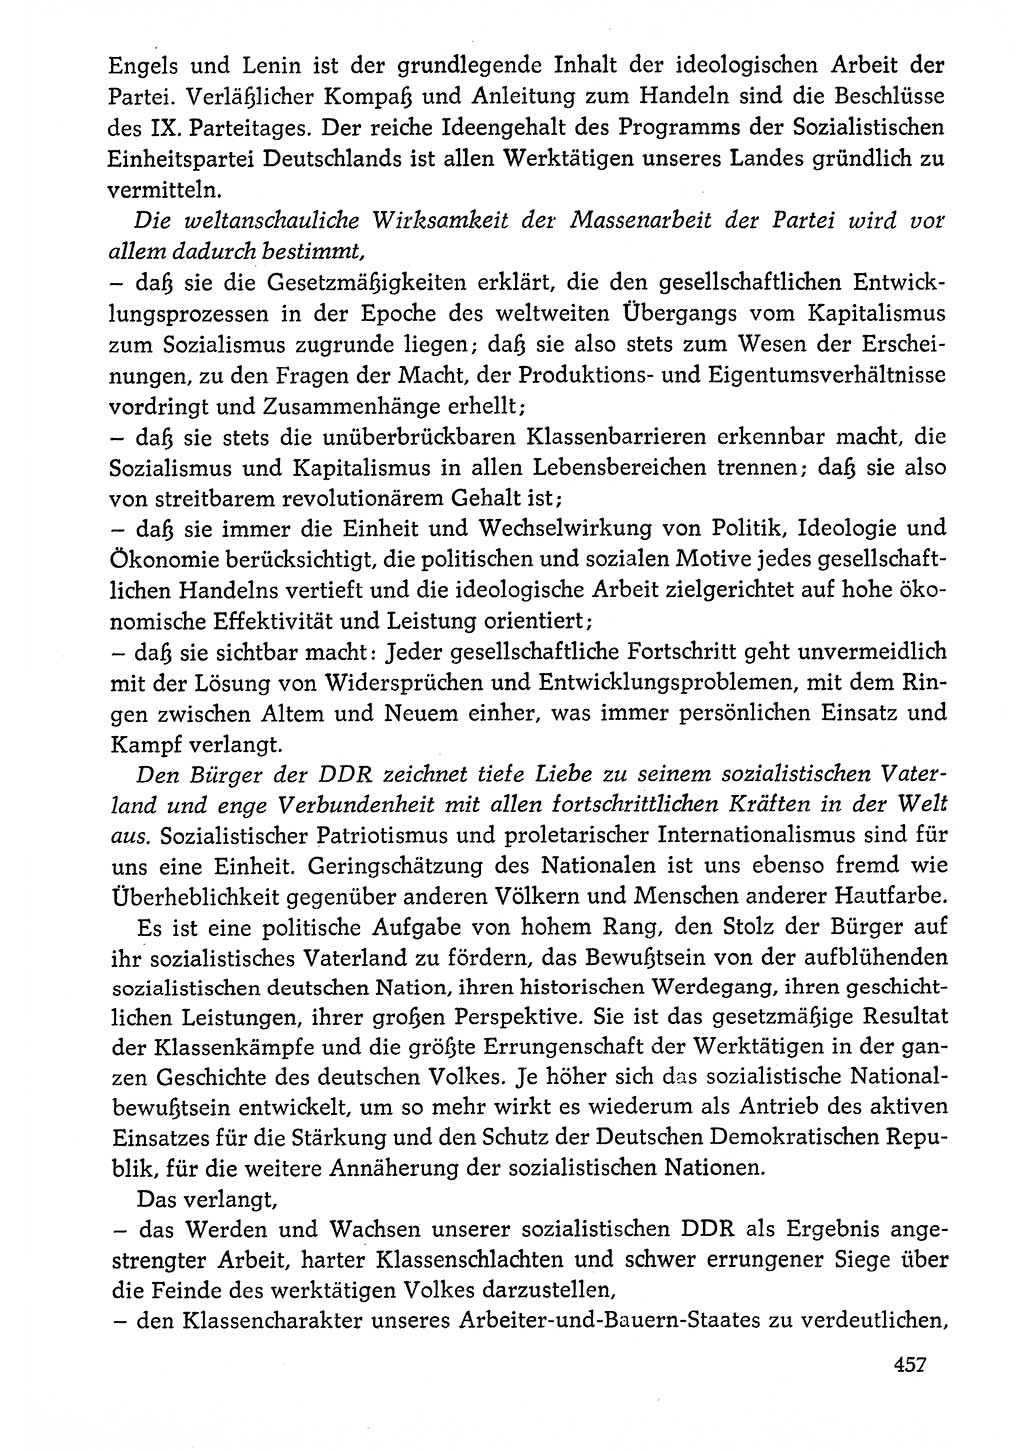 Dokumente der Sozialistischen Einheitspartei Deutschlands (SED) [Deutsche Demokratische Republik (DDR)] 1976-1977, Seite 457 (Dok. SED DDR 1976-1977, S. 457)